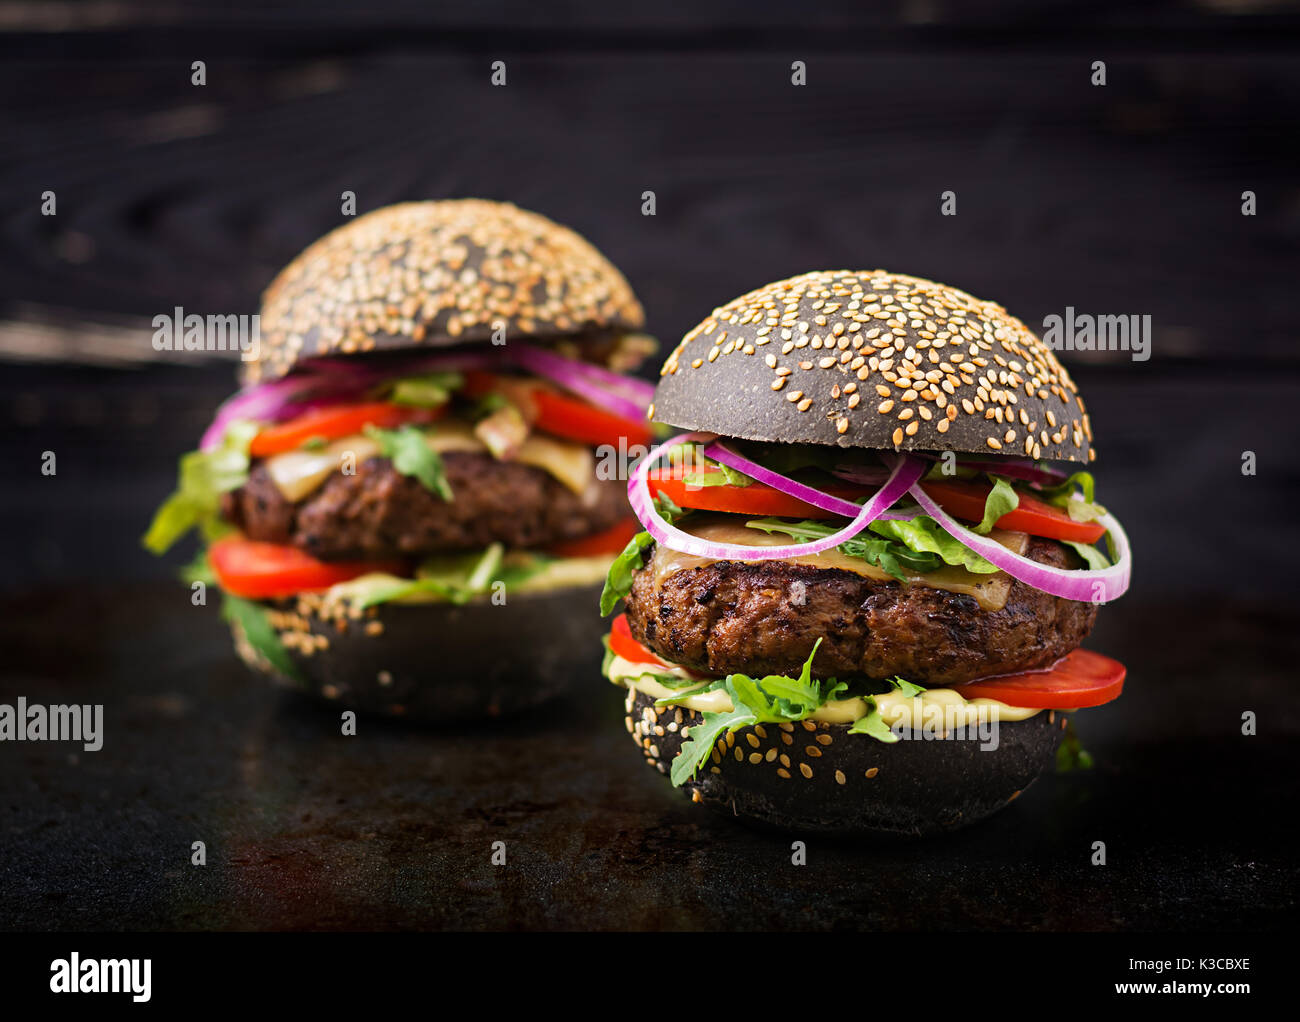 Big sandwich noir - noir avec hamburger burger de boeuf juteux, fromage, tomate et oignon rouge sur fond noir Banque D'Images